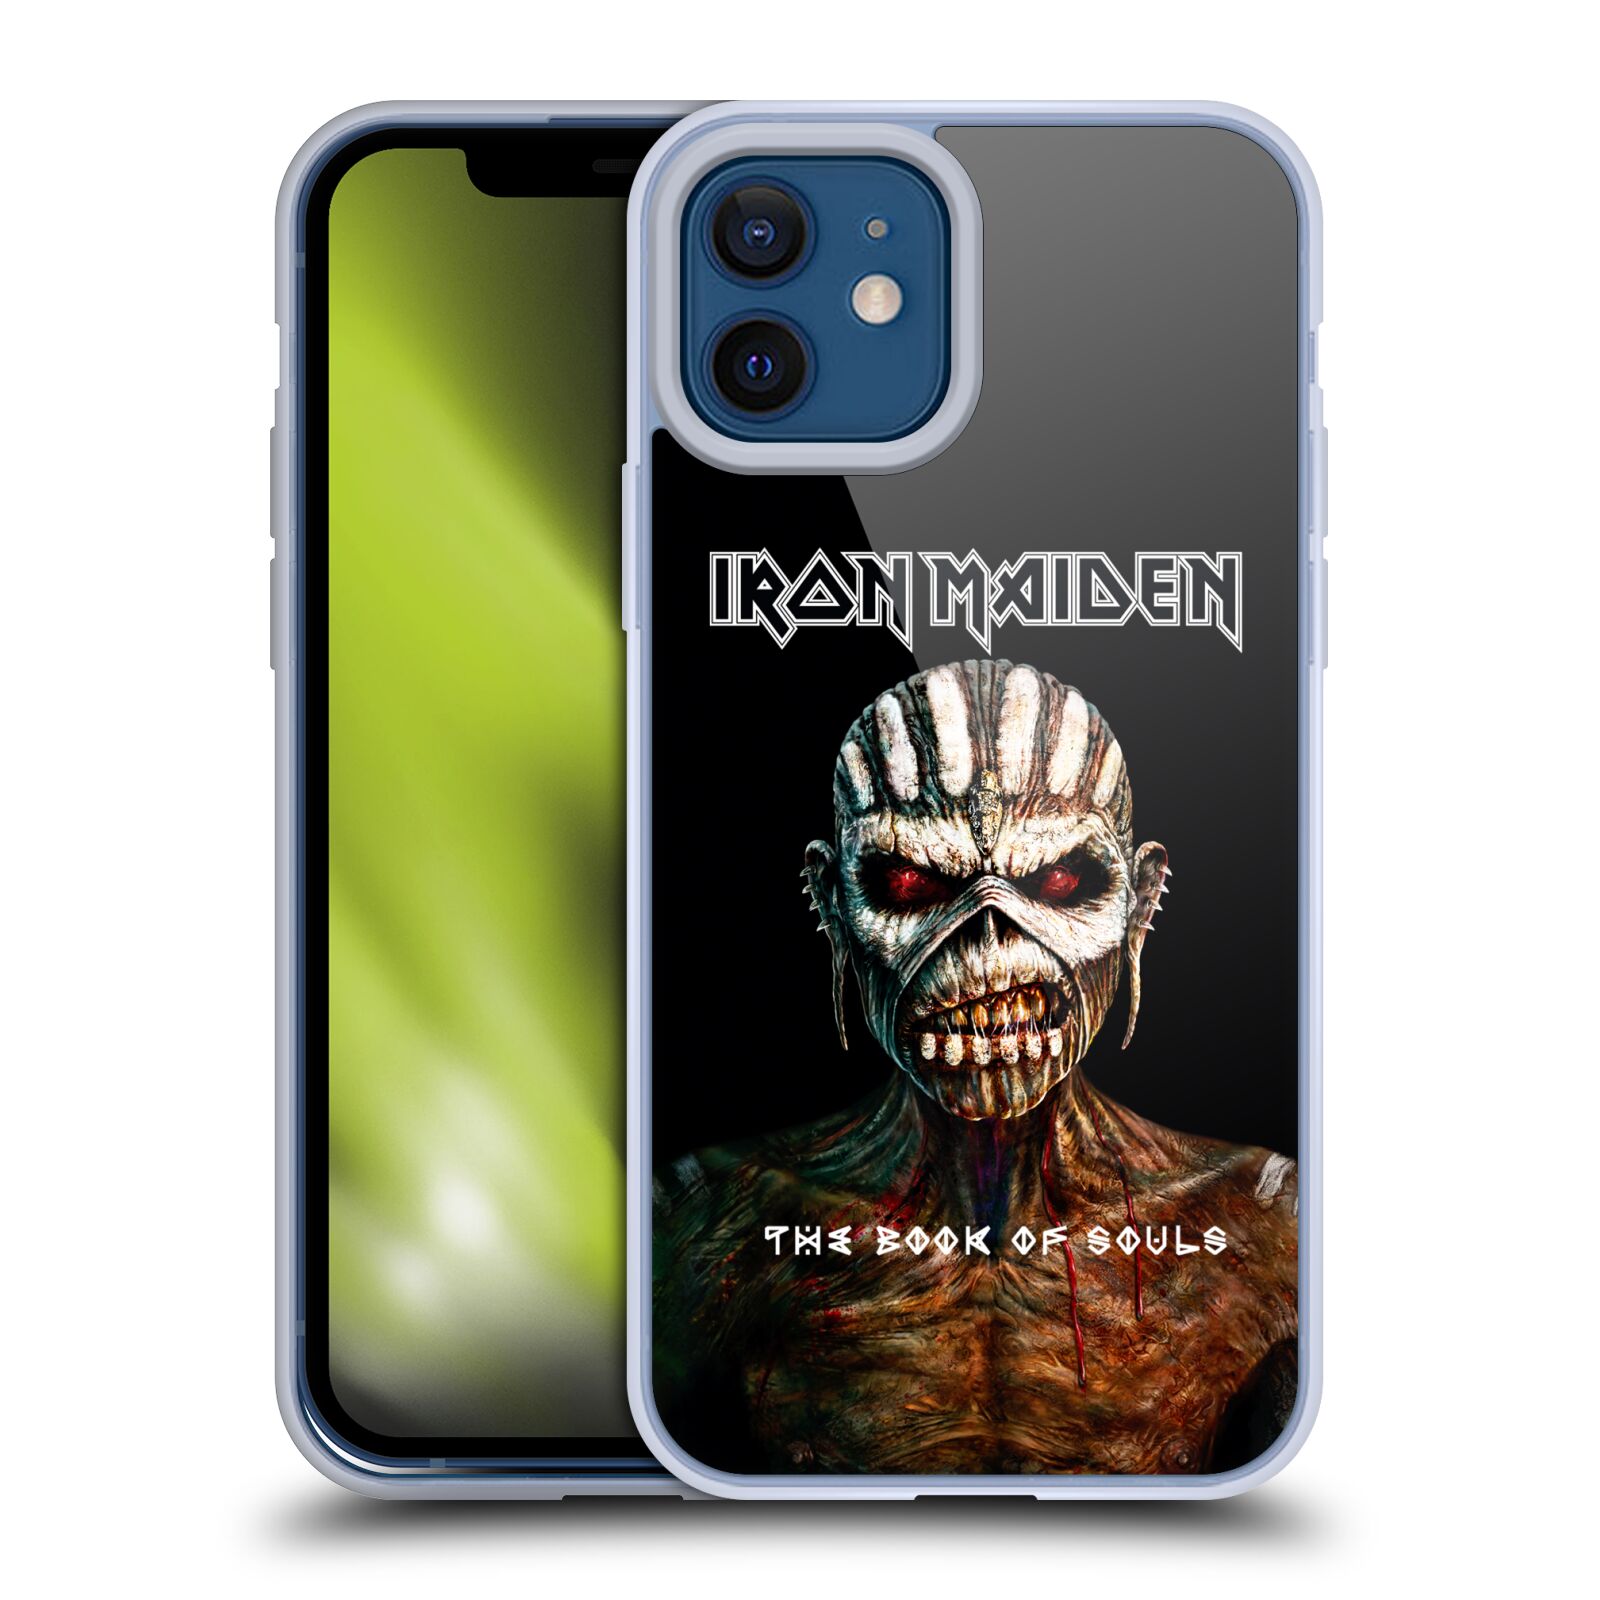 Silikonové pouzdro na mobil Apple iPhone 12 / 12 Pro - Head Case - Iron Maiden - The Book Of Souls (Silikonový kryt, obal, pouzdro na mobilní telefon Apple iPhone 12 / Apple iPhone 12 Pro (6,1") s motivem Iron Maiden - The Book Of Souls)